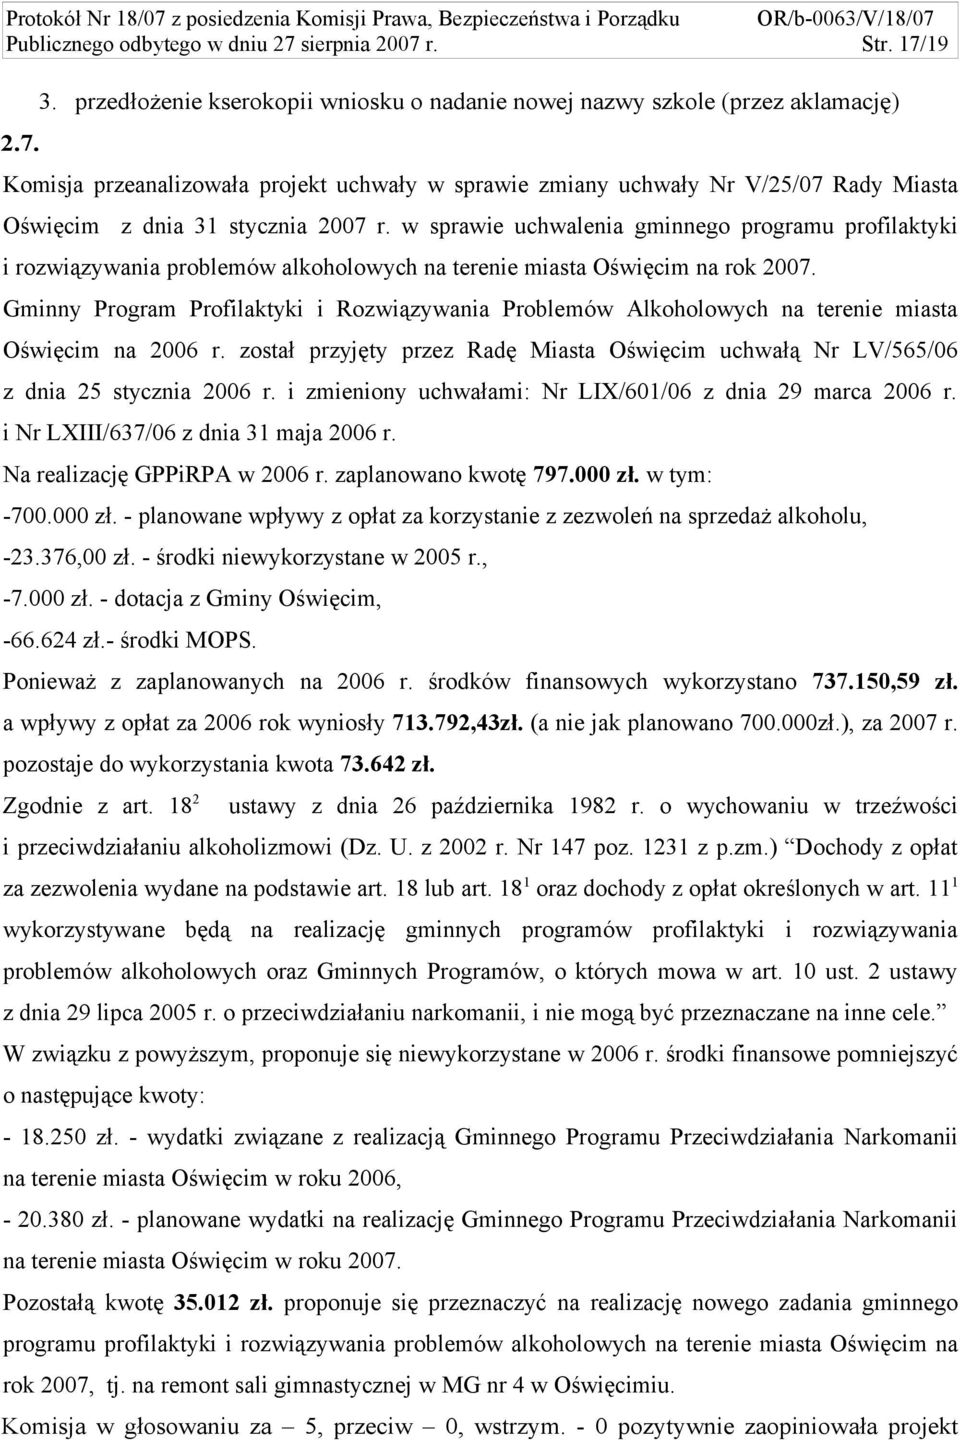 Gminny Program Profilaktyki i Rozwiązywania Problemów Alkoholowych na terenie miasta Oświęcim na 2006 r. został przyjęty przez Radę Miasta Oświęcim uchwałą Nr LV/565/06 z dnia 25 stycznia 2006 r.